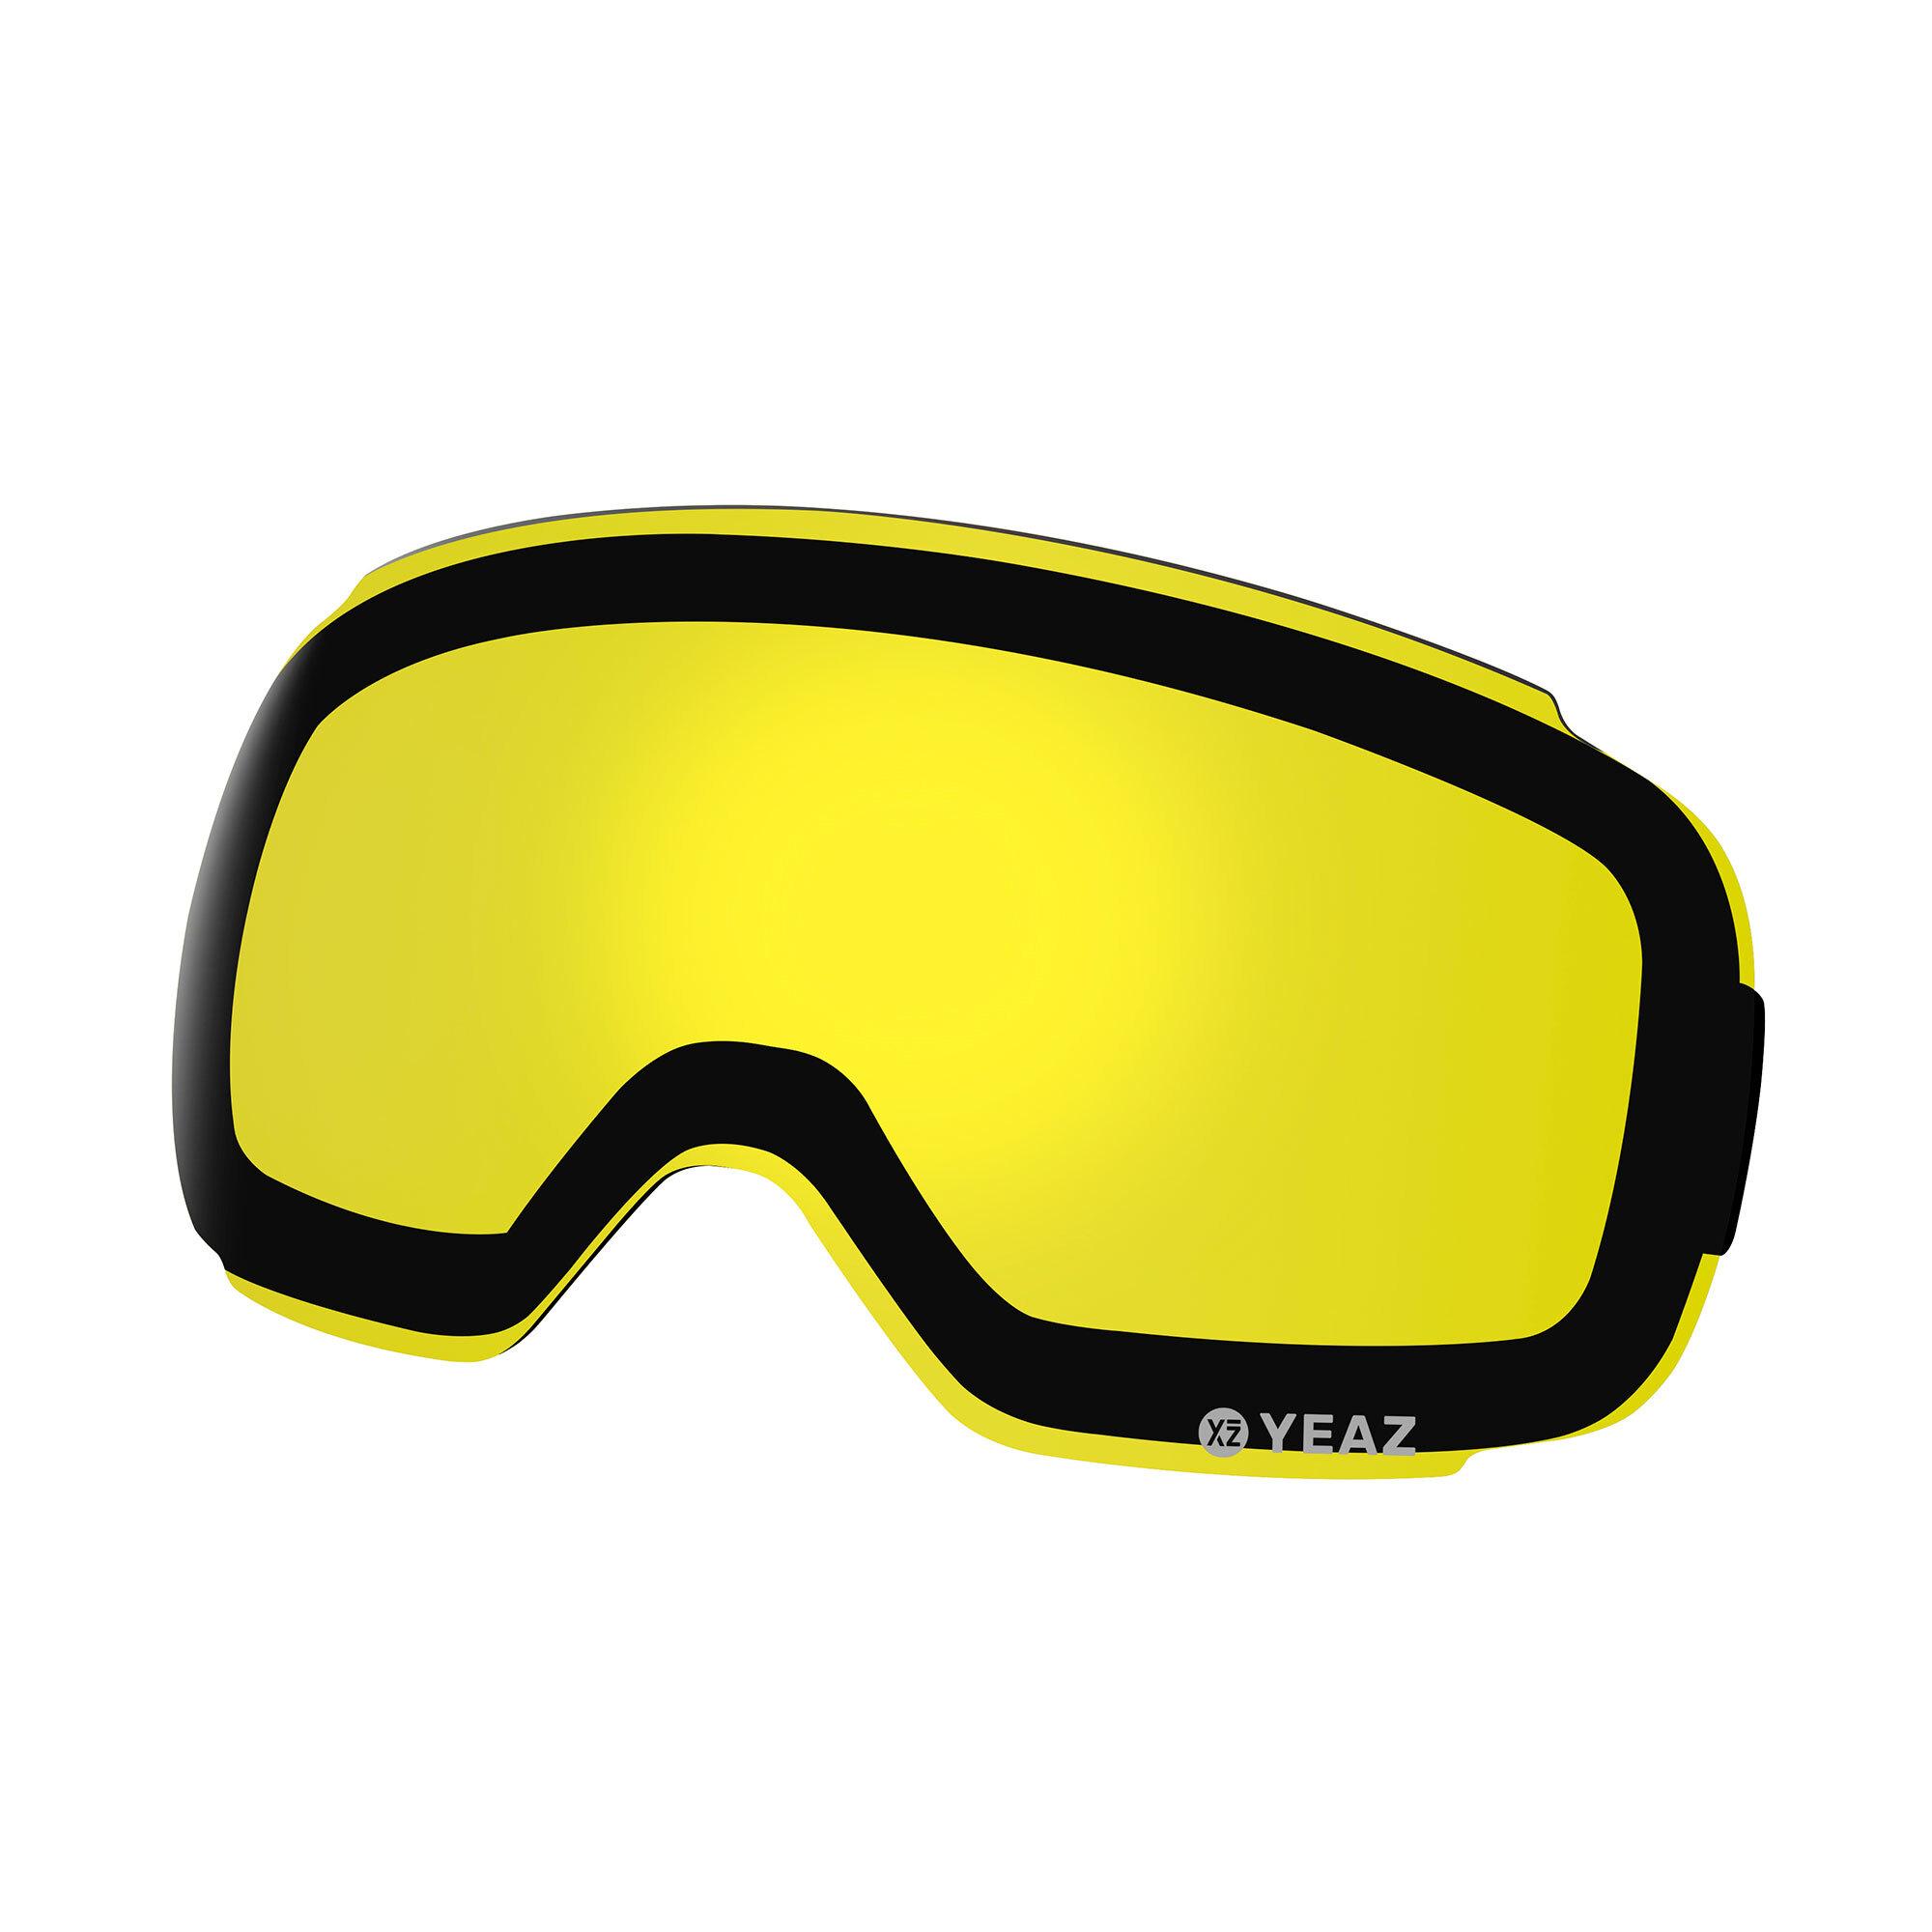 Ausrüstung » gelb von Ski in Online Shop kaufen im SportScheck